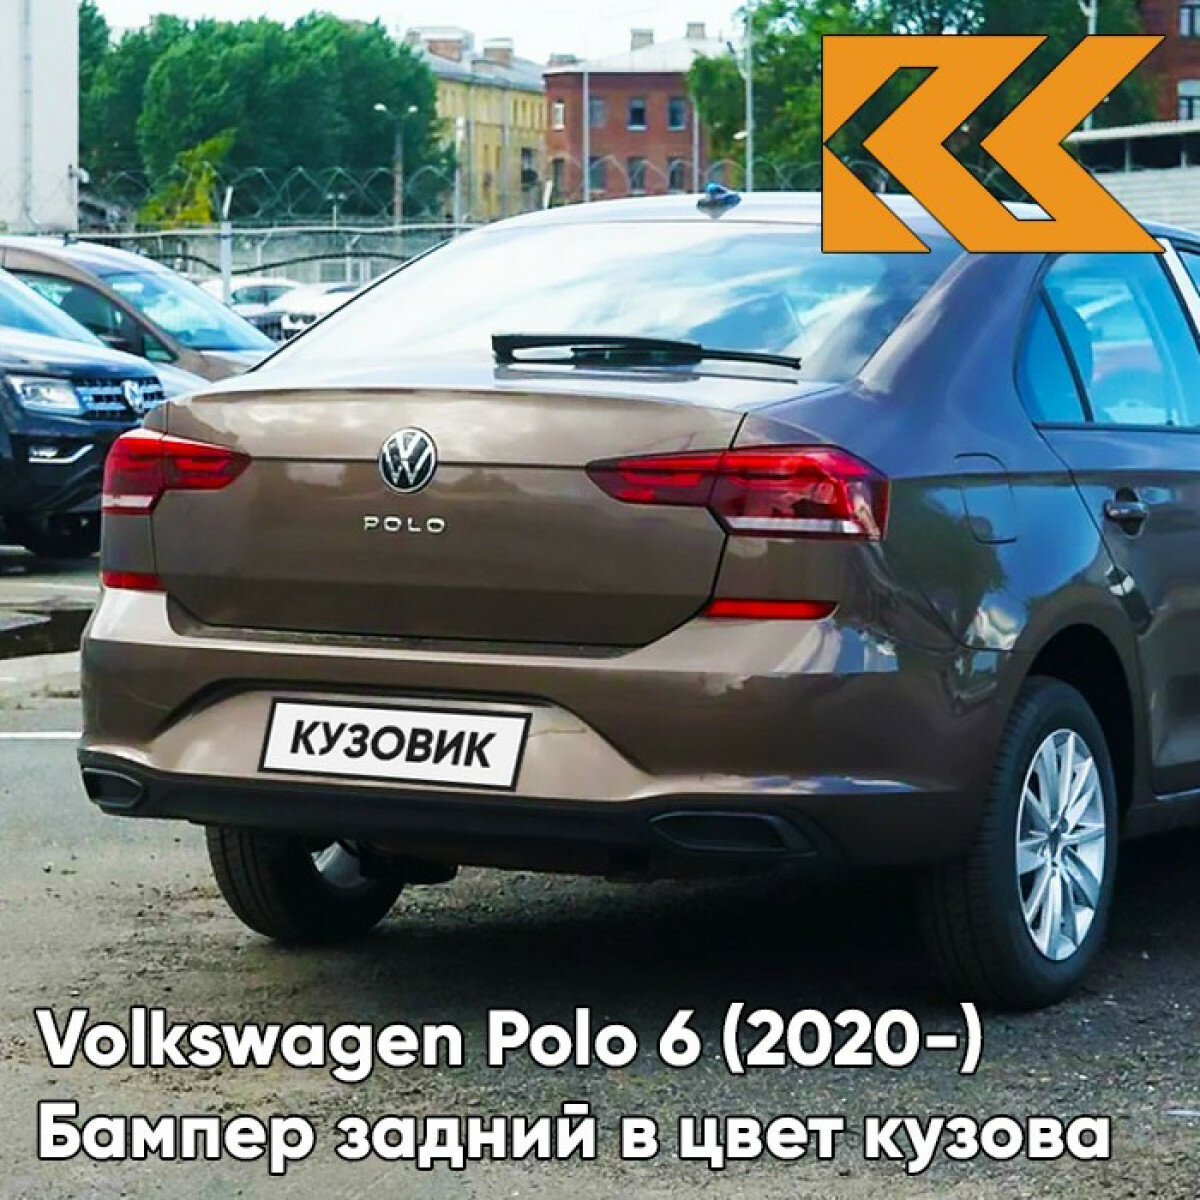 Бампер задний в цвет Volkswagen Polo 6 (2020-) 4Q - LH8Z TOFFEE BROWN - Коричневый